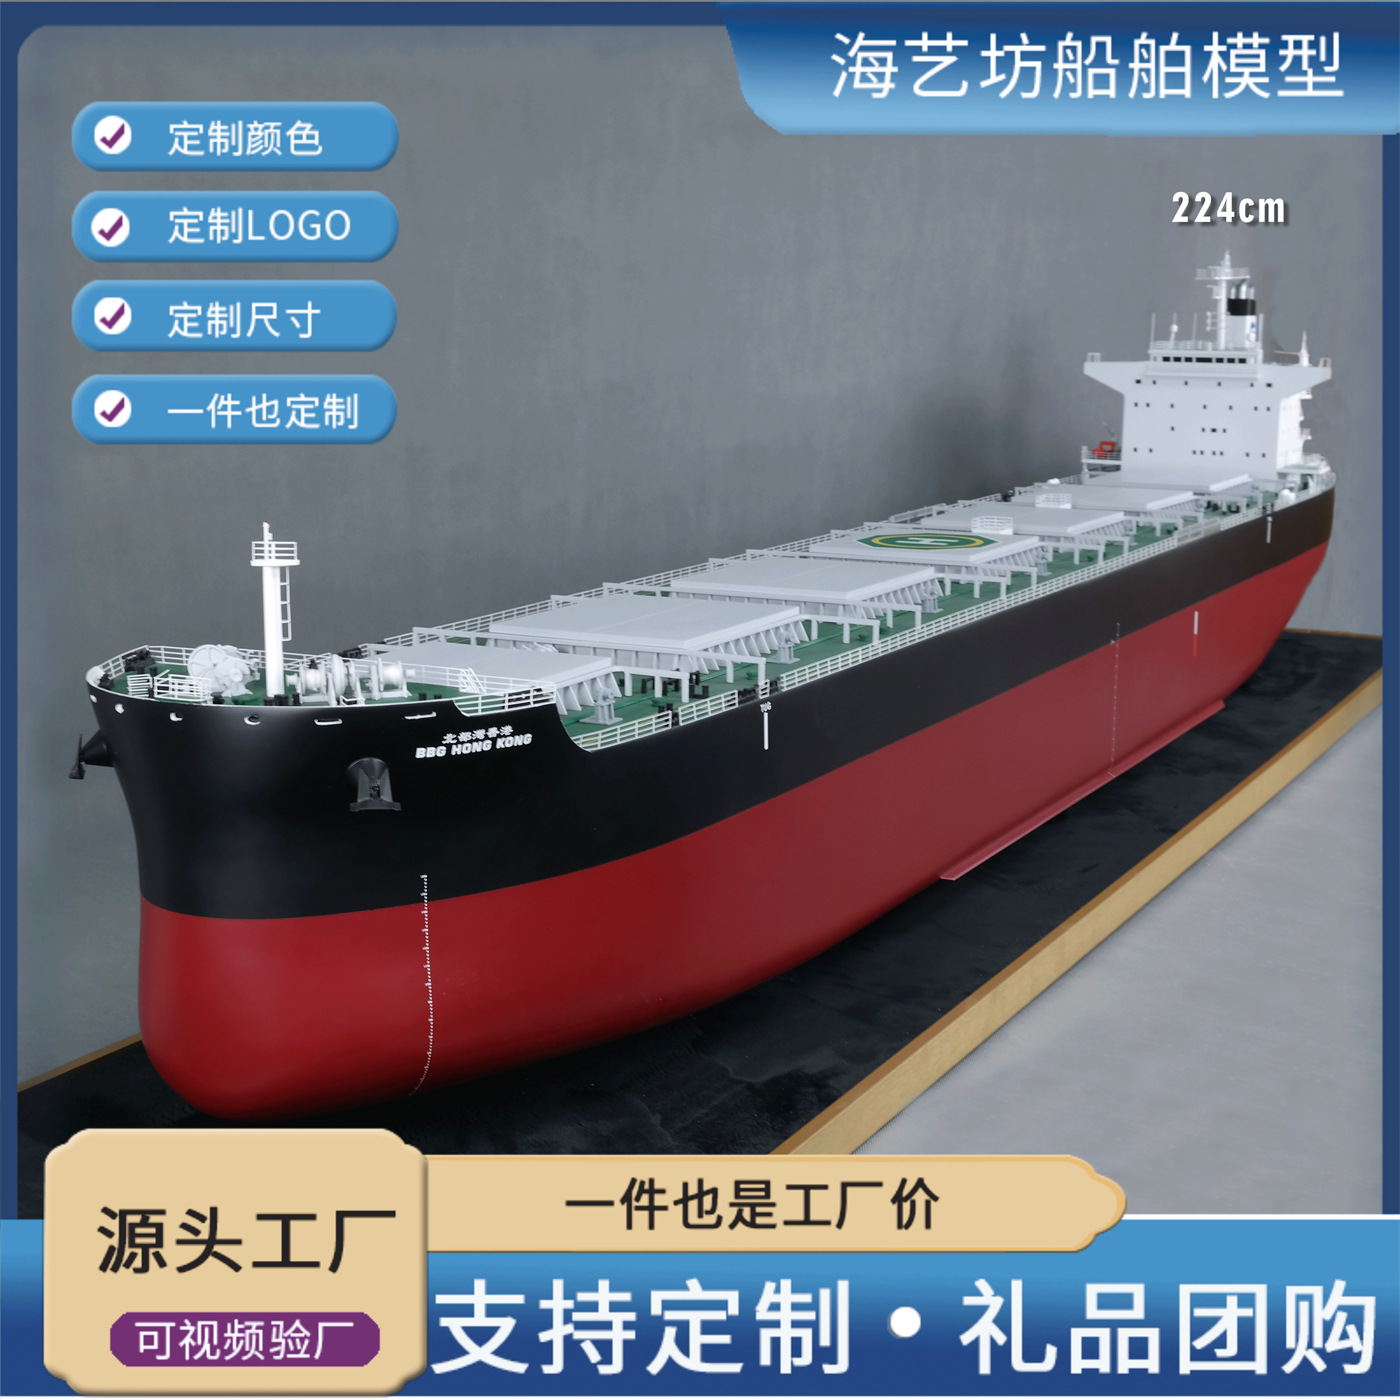 2.24米北京灣香港七舱散货船 仿真船舶模型制作 海艺坊